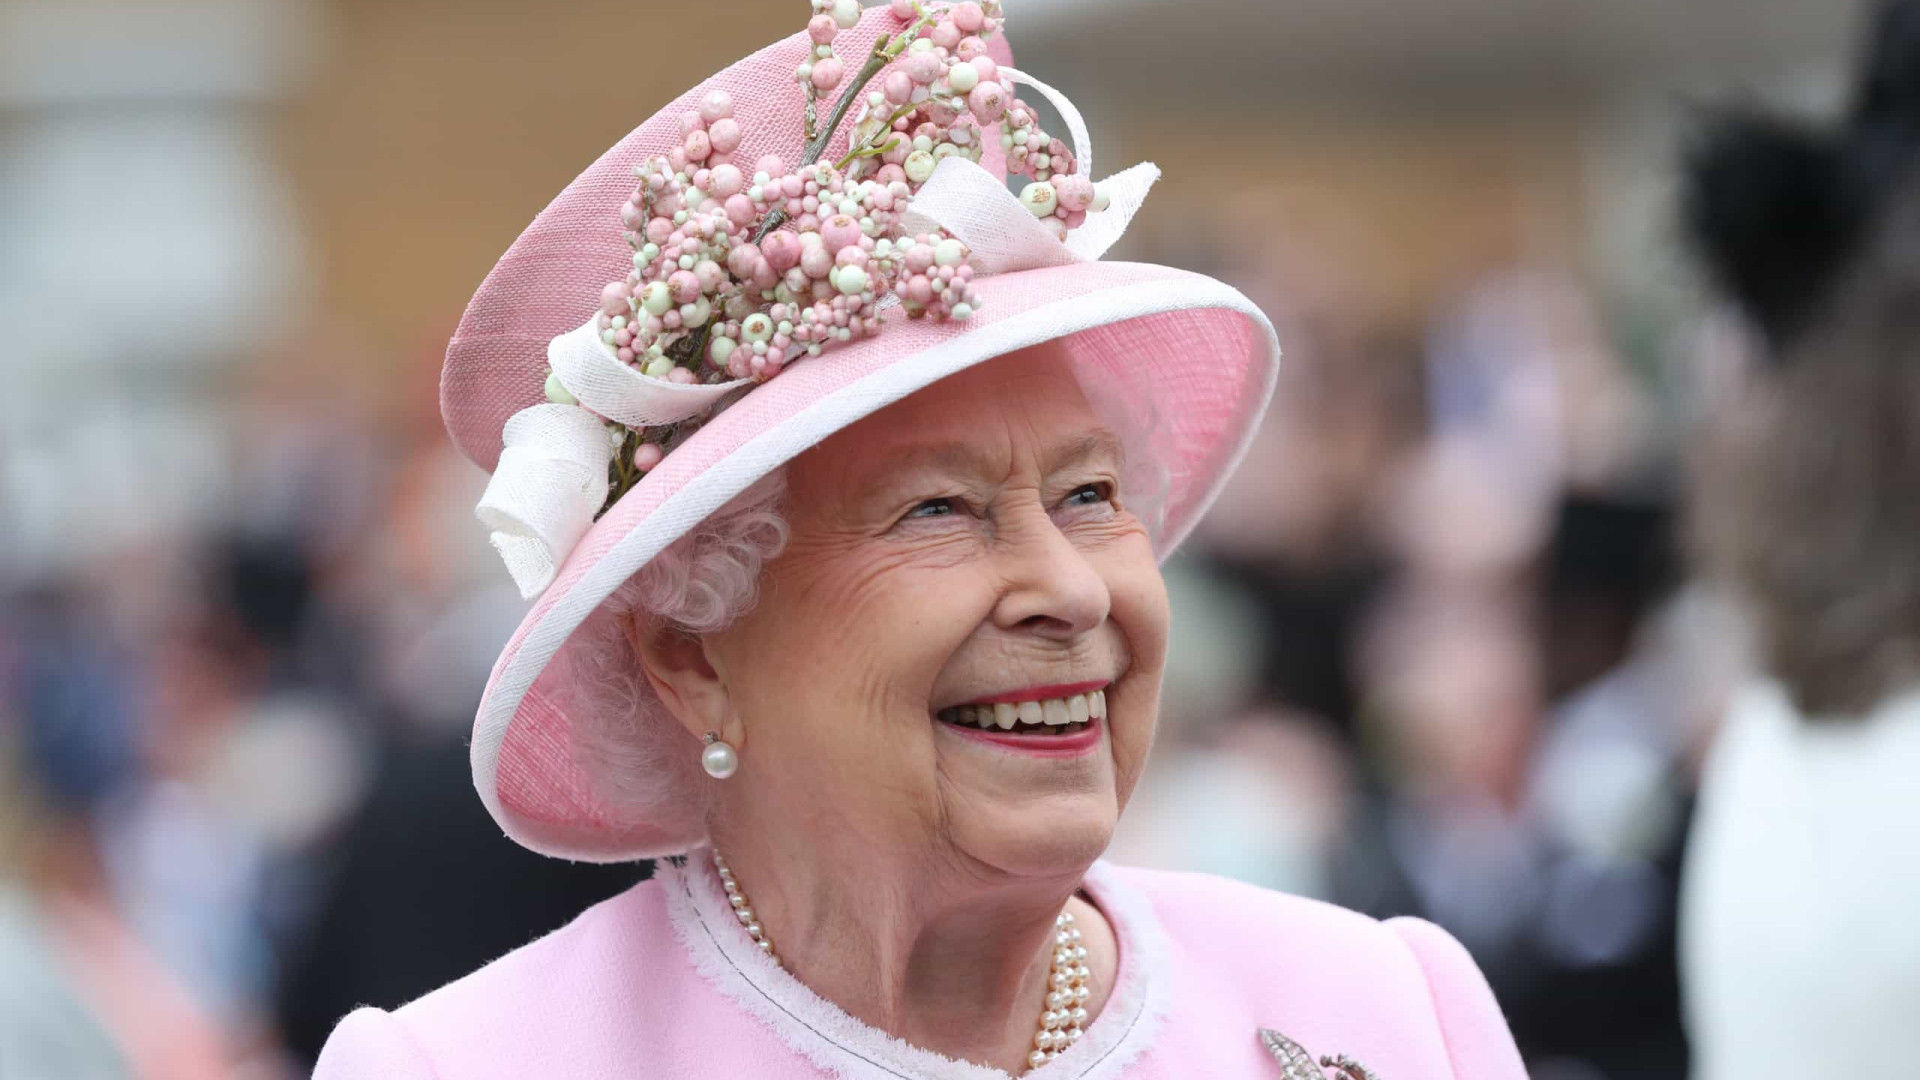 Rainha abre as portas do Palácio de Buckingham! Detalhes impressionam